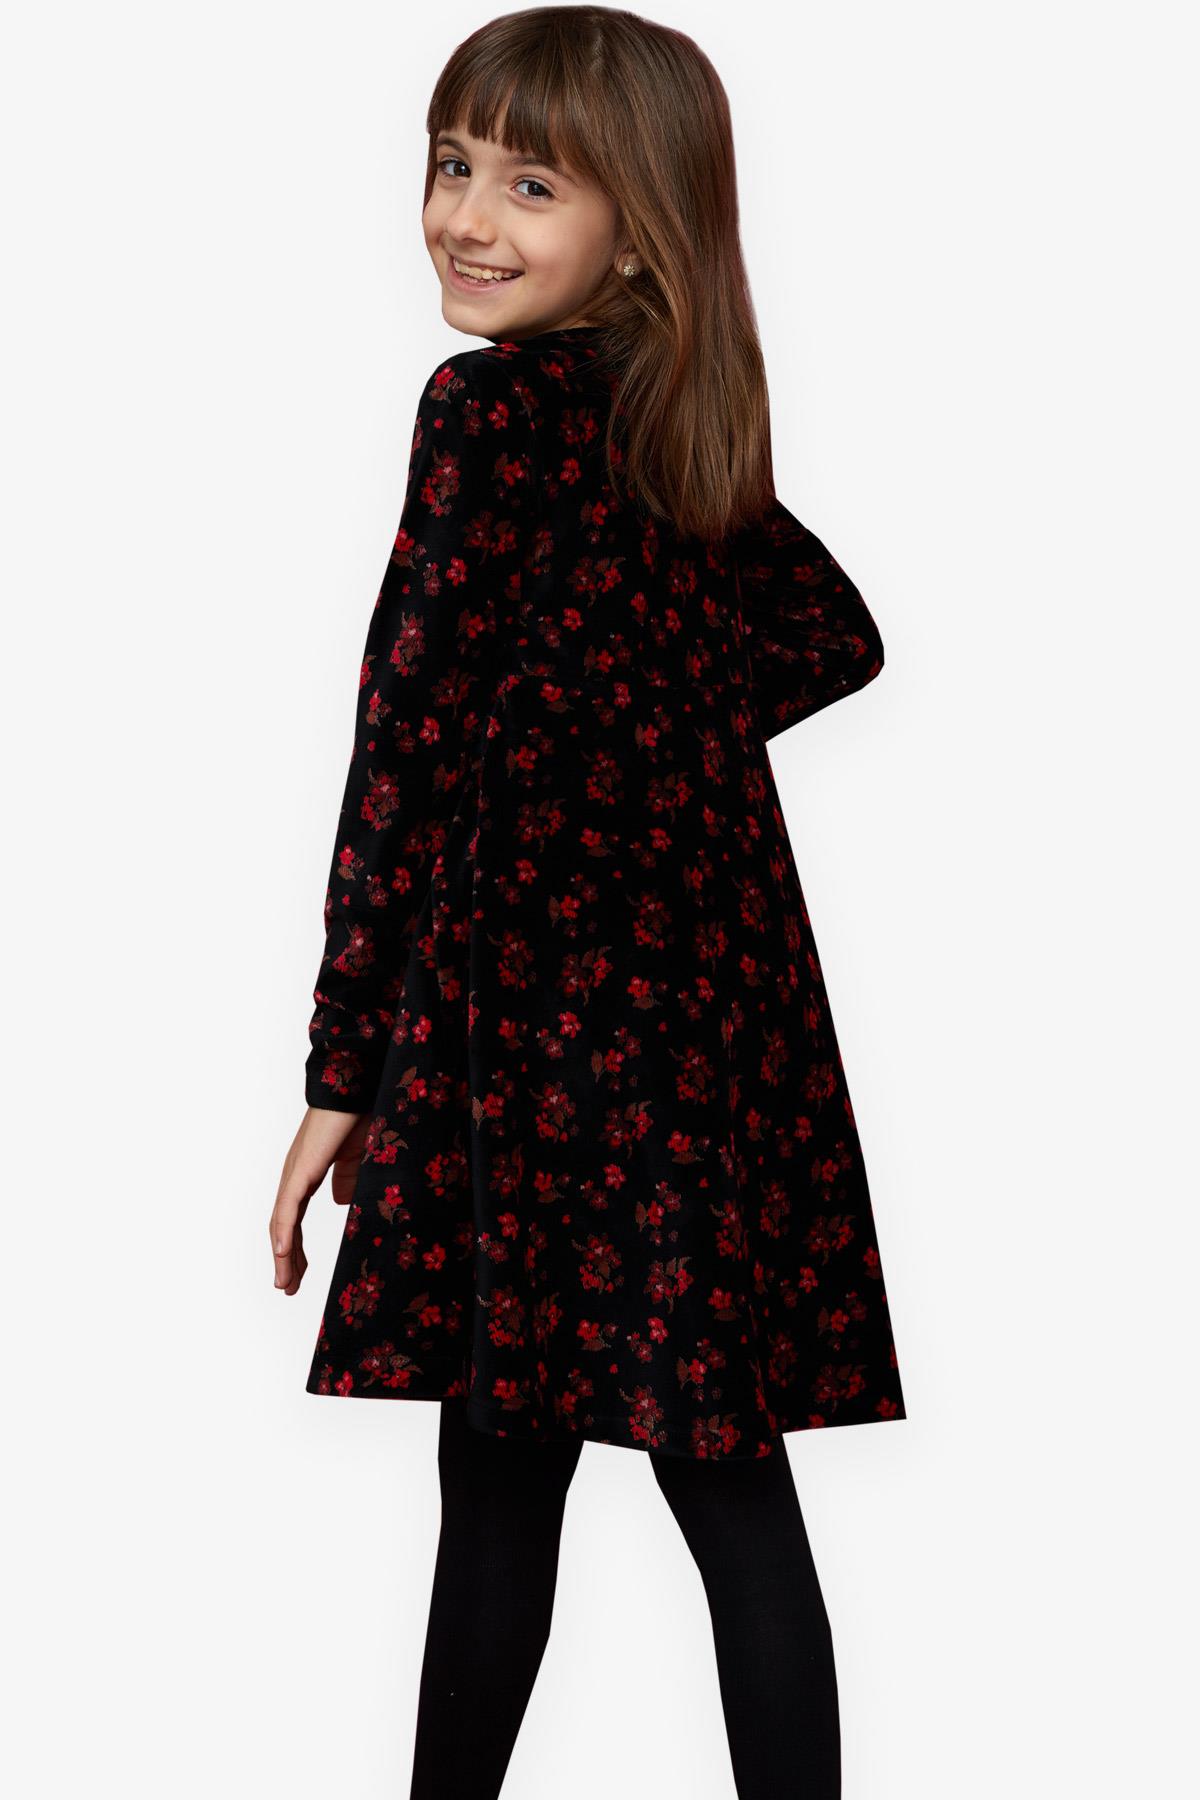 Kız Çocuk Kadife Elbise Çiçekli Siyah 7-12 Yaş - Kışlık Baharlık Elbiseler  | Breeze